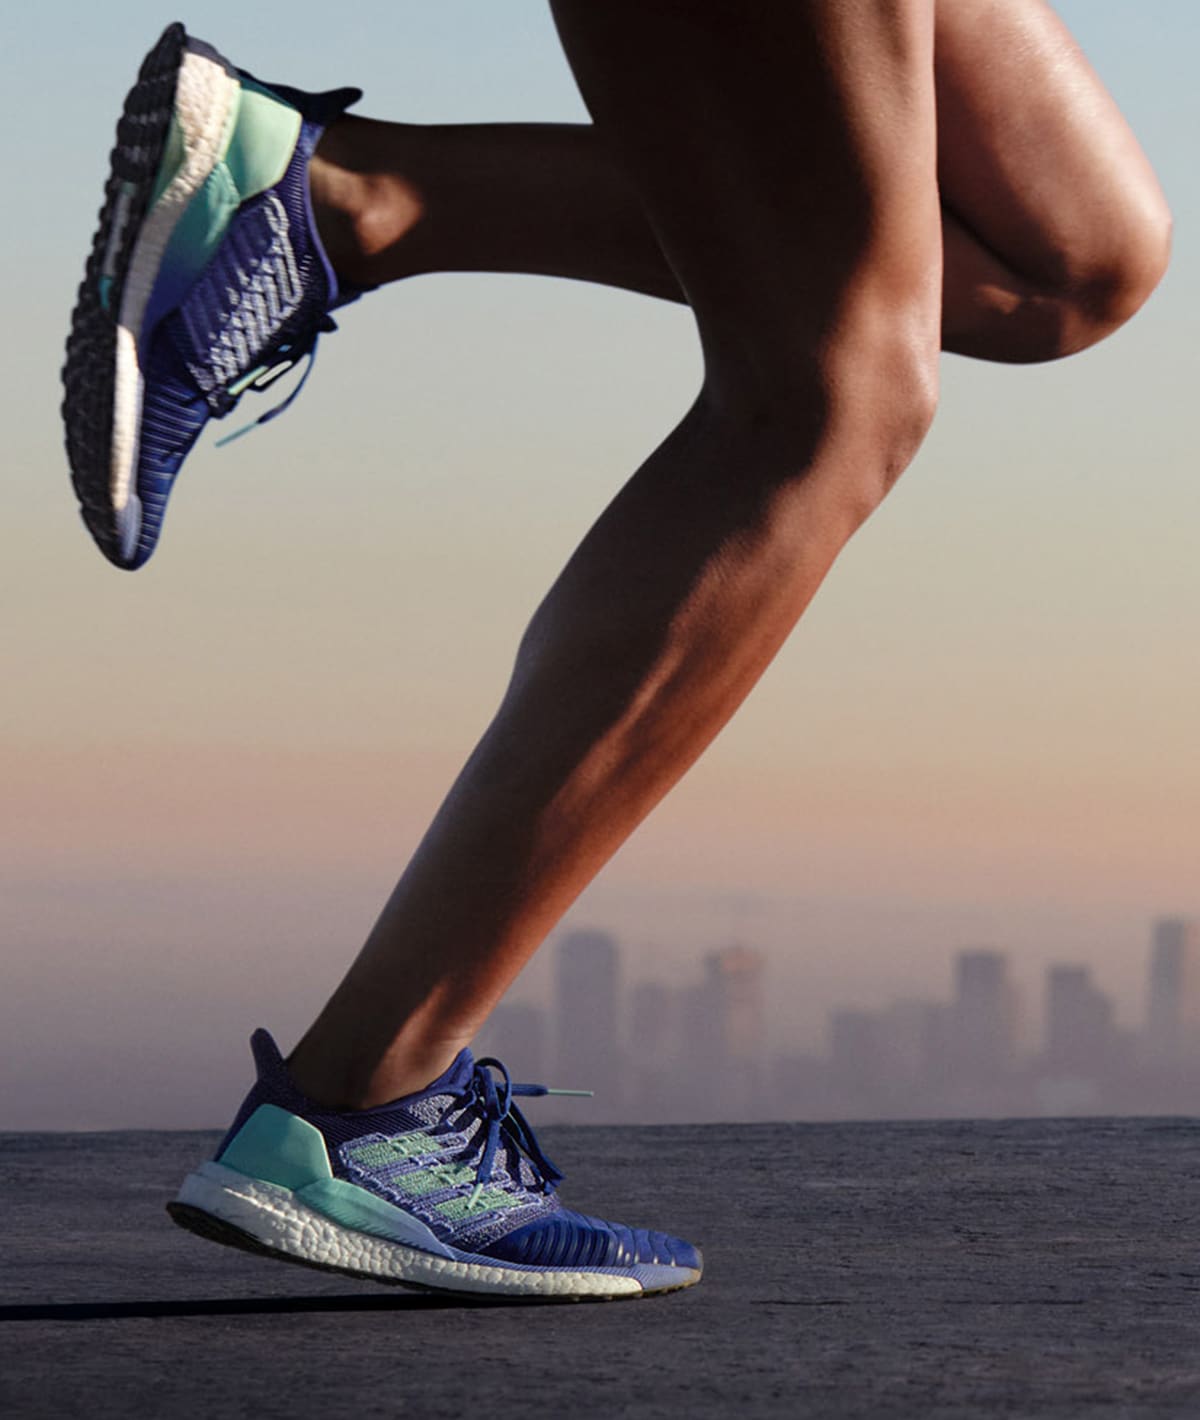 Meer opwinding vier keer How to Clean Running Shoes